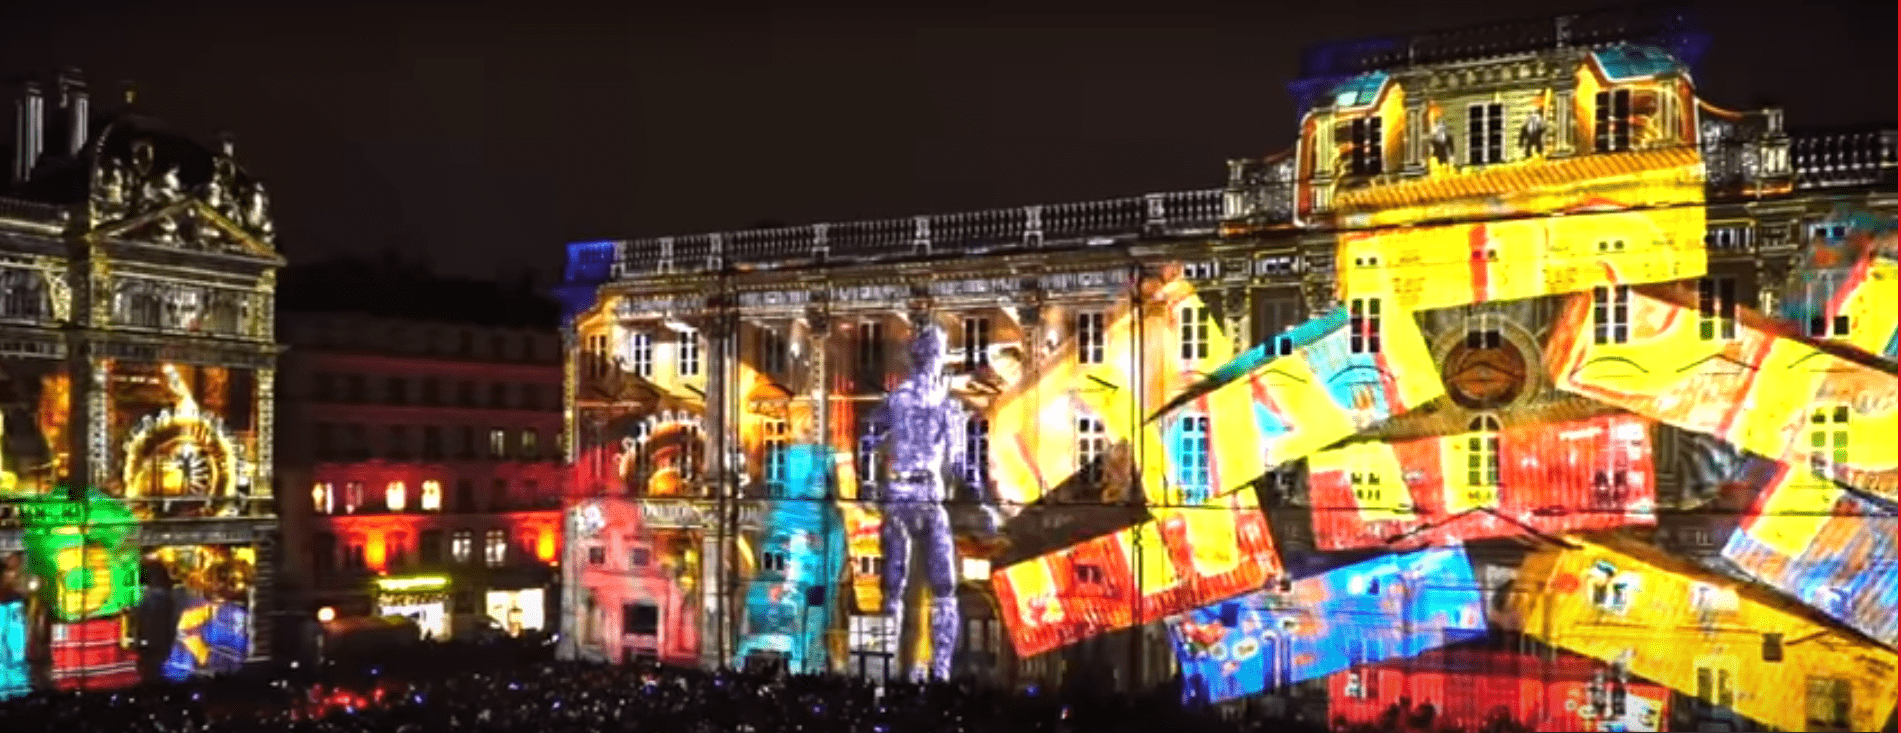 Festival of Lights in Lyon, France 